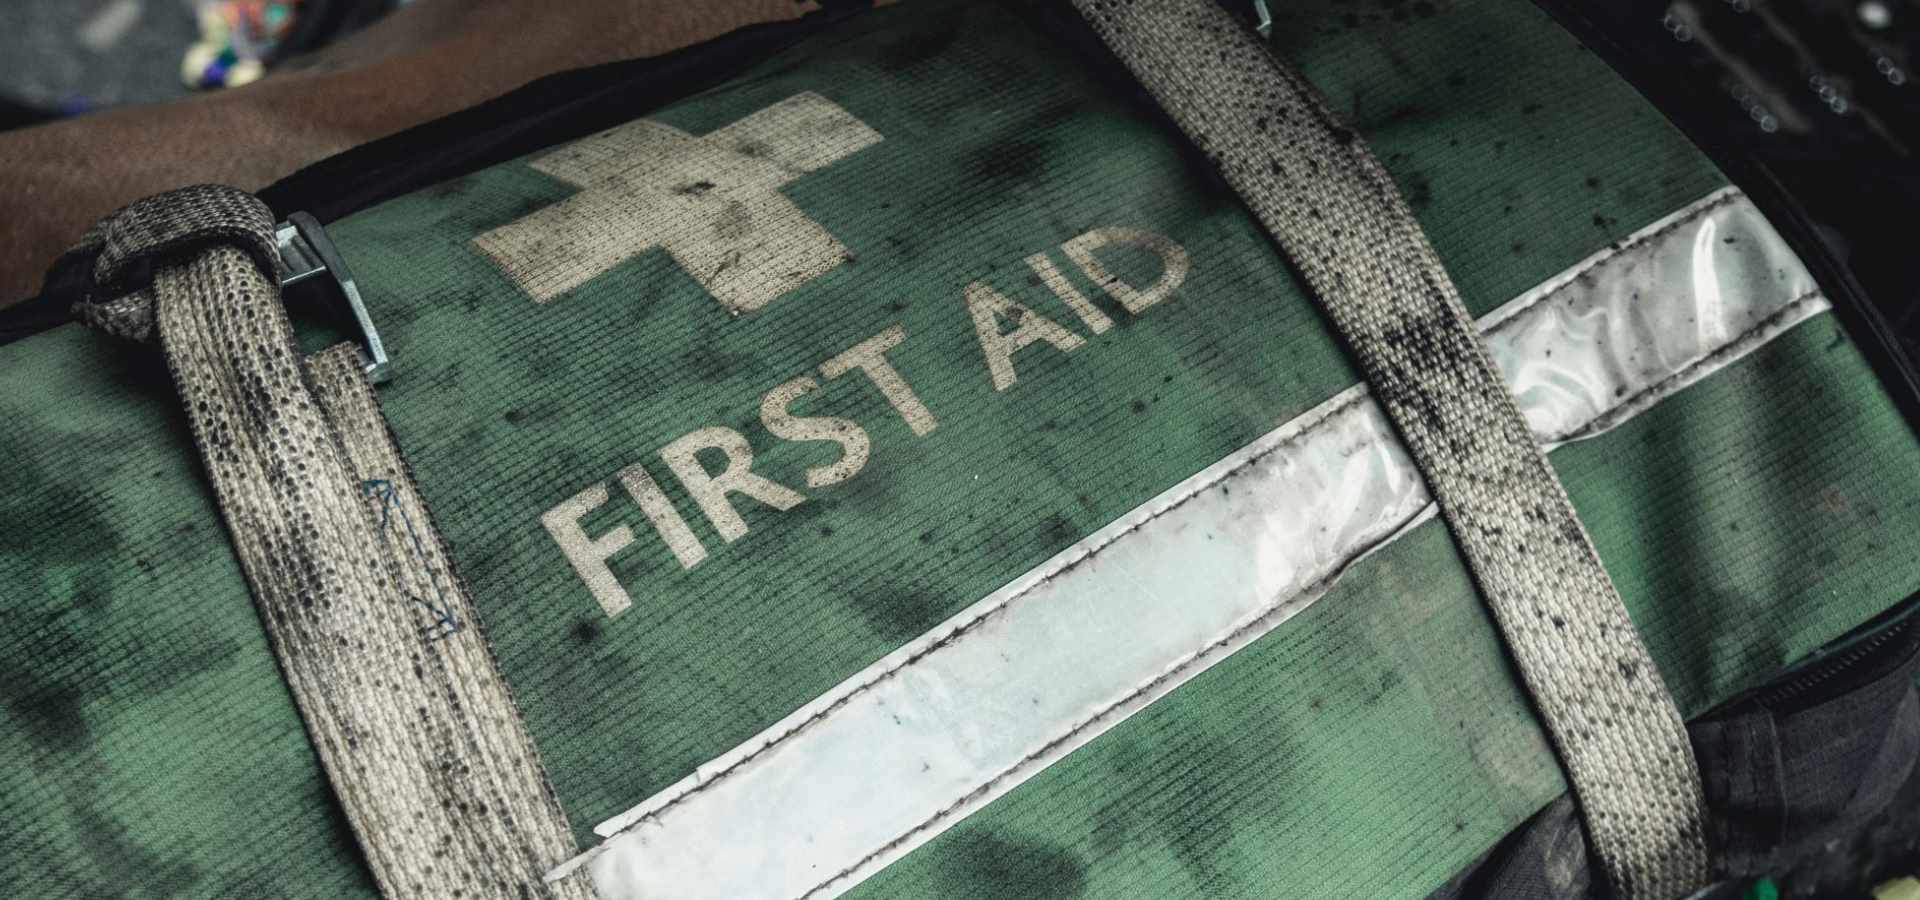 A first aid bag